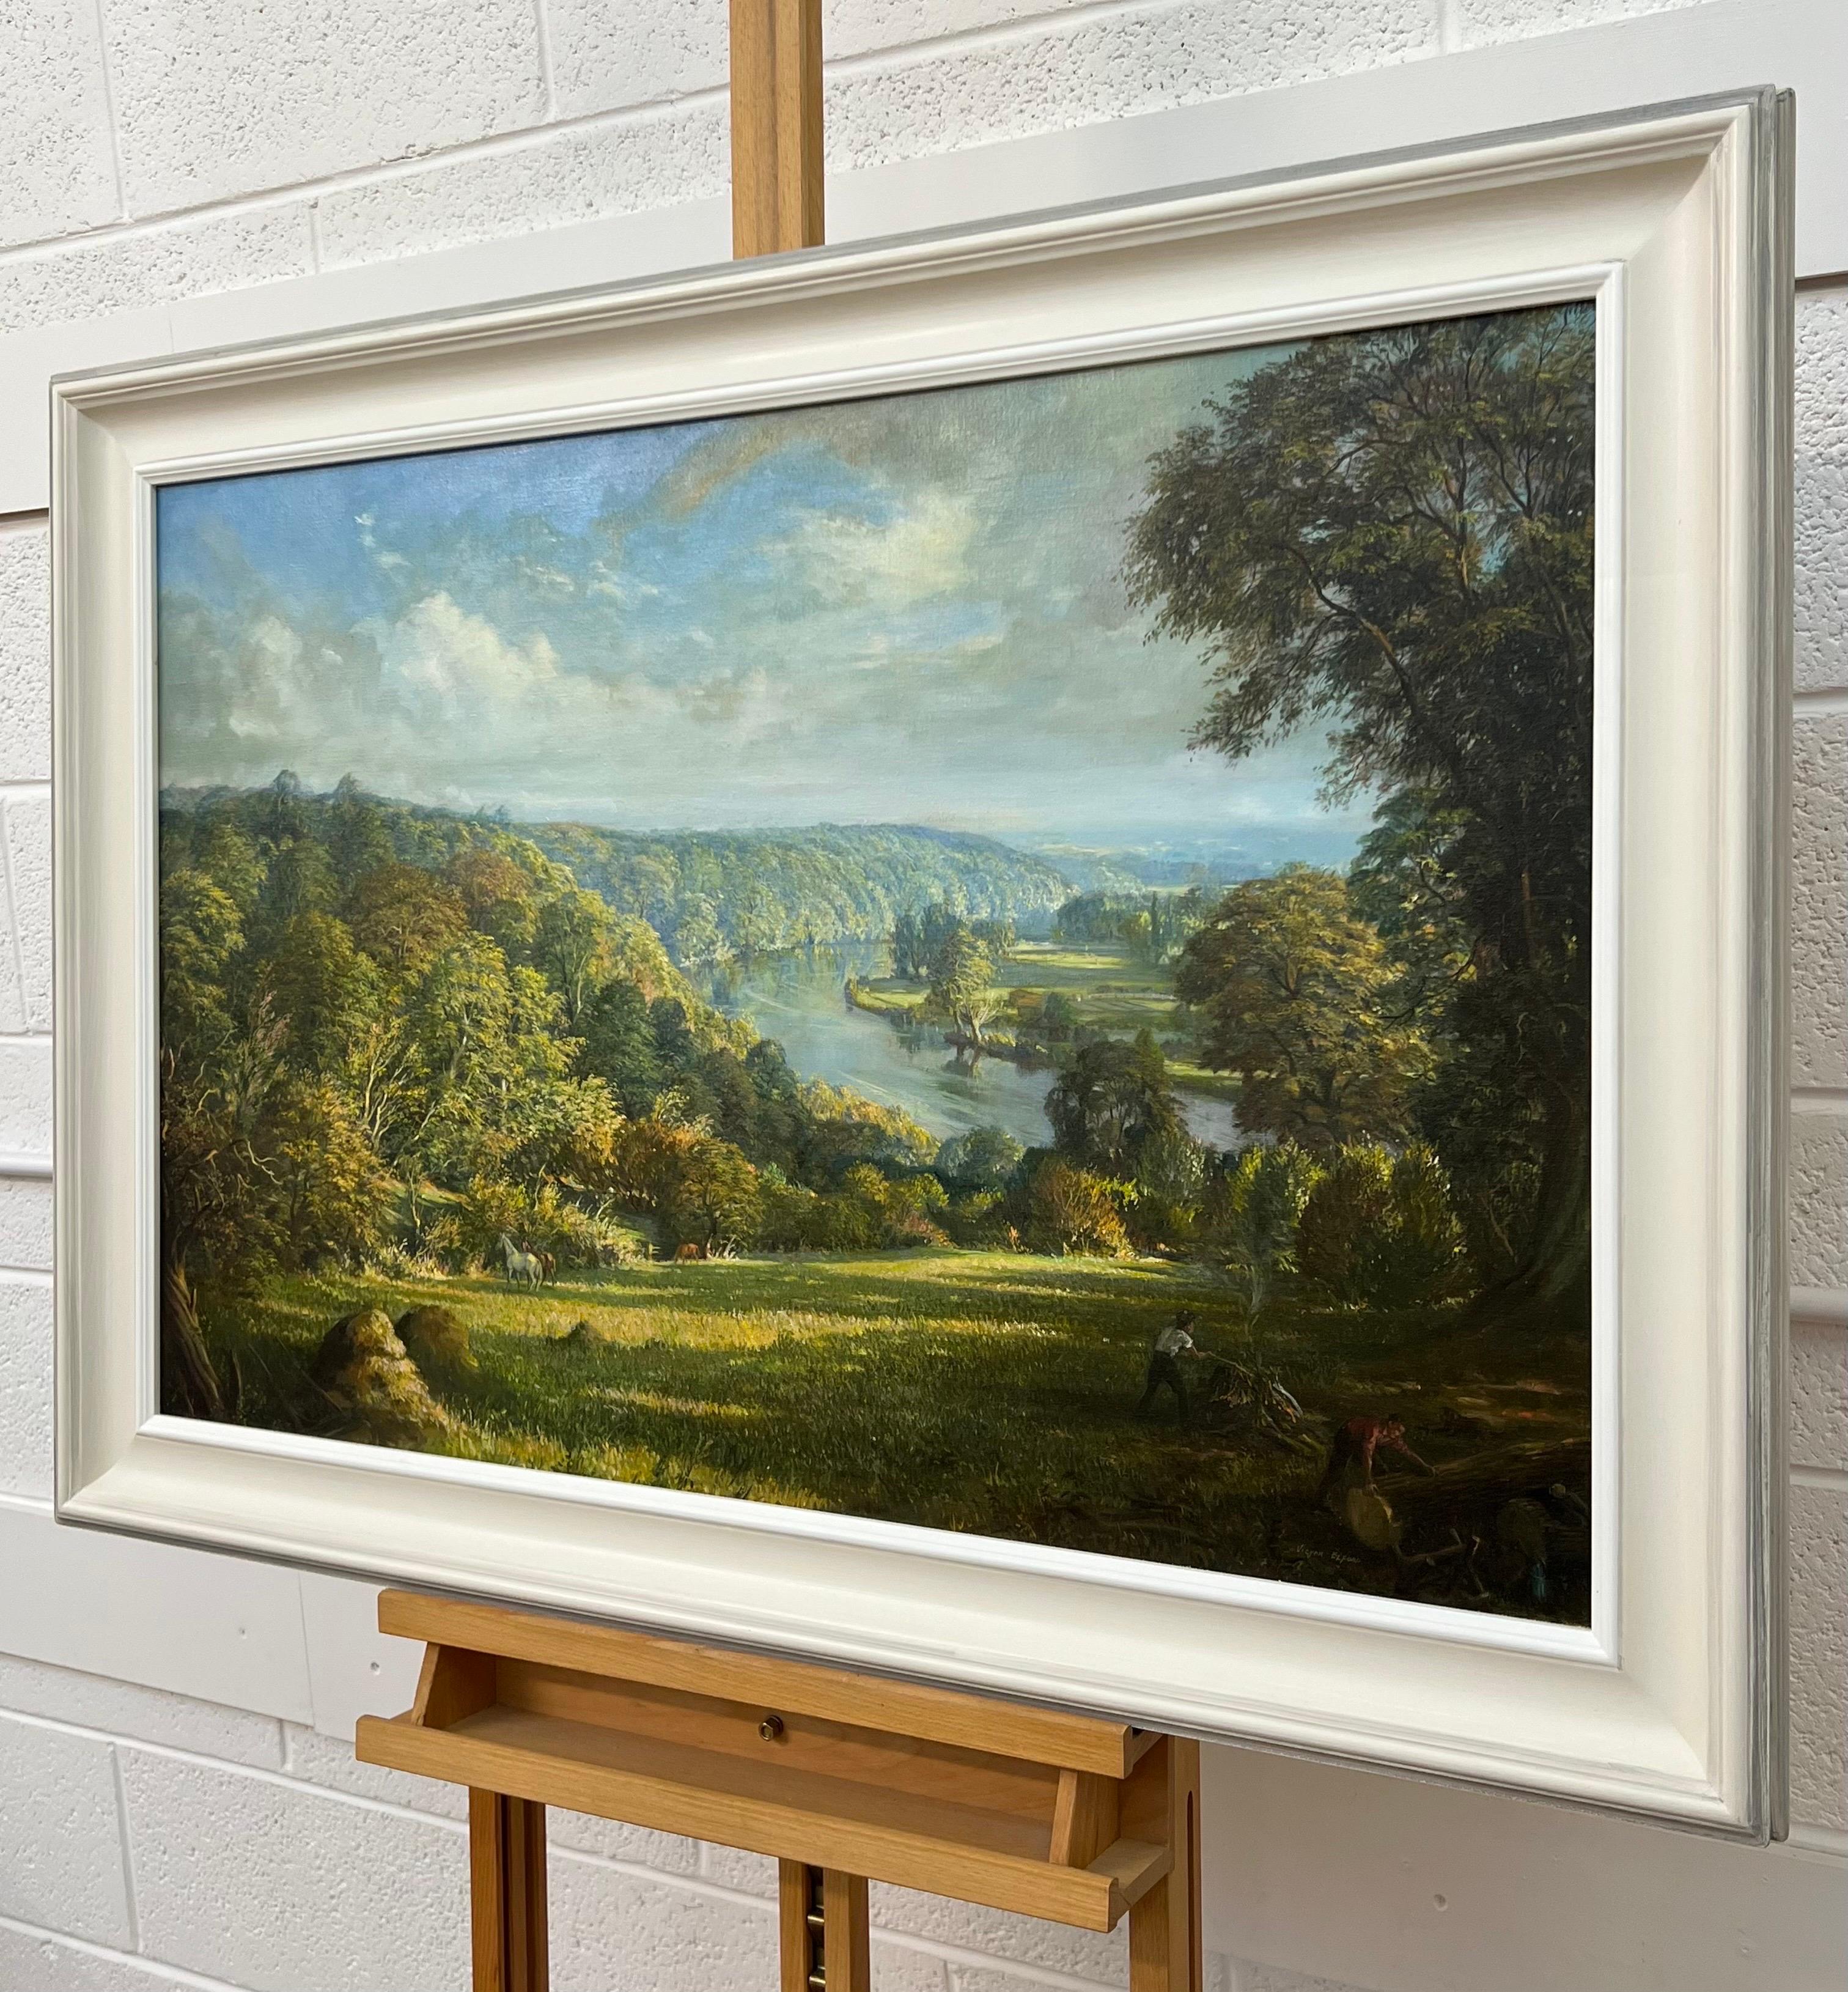 Themse von Clivedon Woodland Garden London des britischen Künstlers des 20. Jahrhunderts, Victor Elford (1911 - 2003). Dieses Gemälde ist eine schöne Darstellung von Pferden in einem hochgelegenen Waldgebiet mit Blick auf die Themse, mit Figuren,